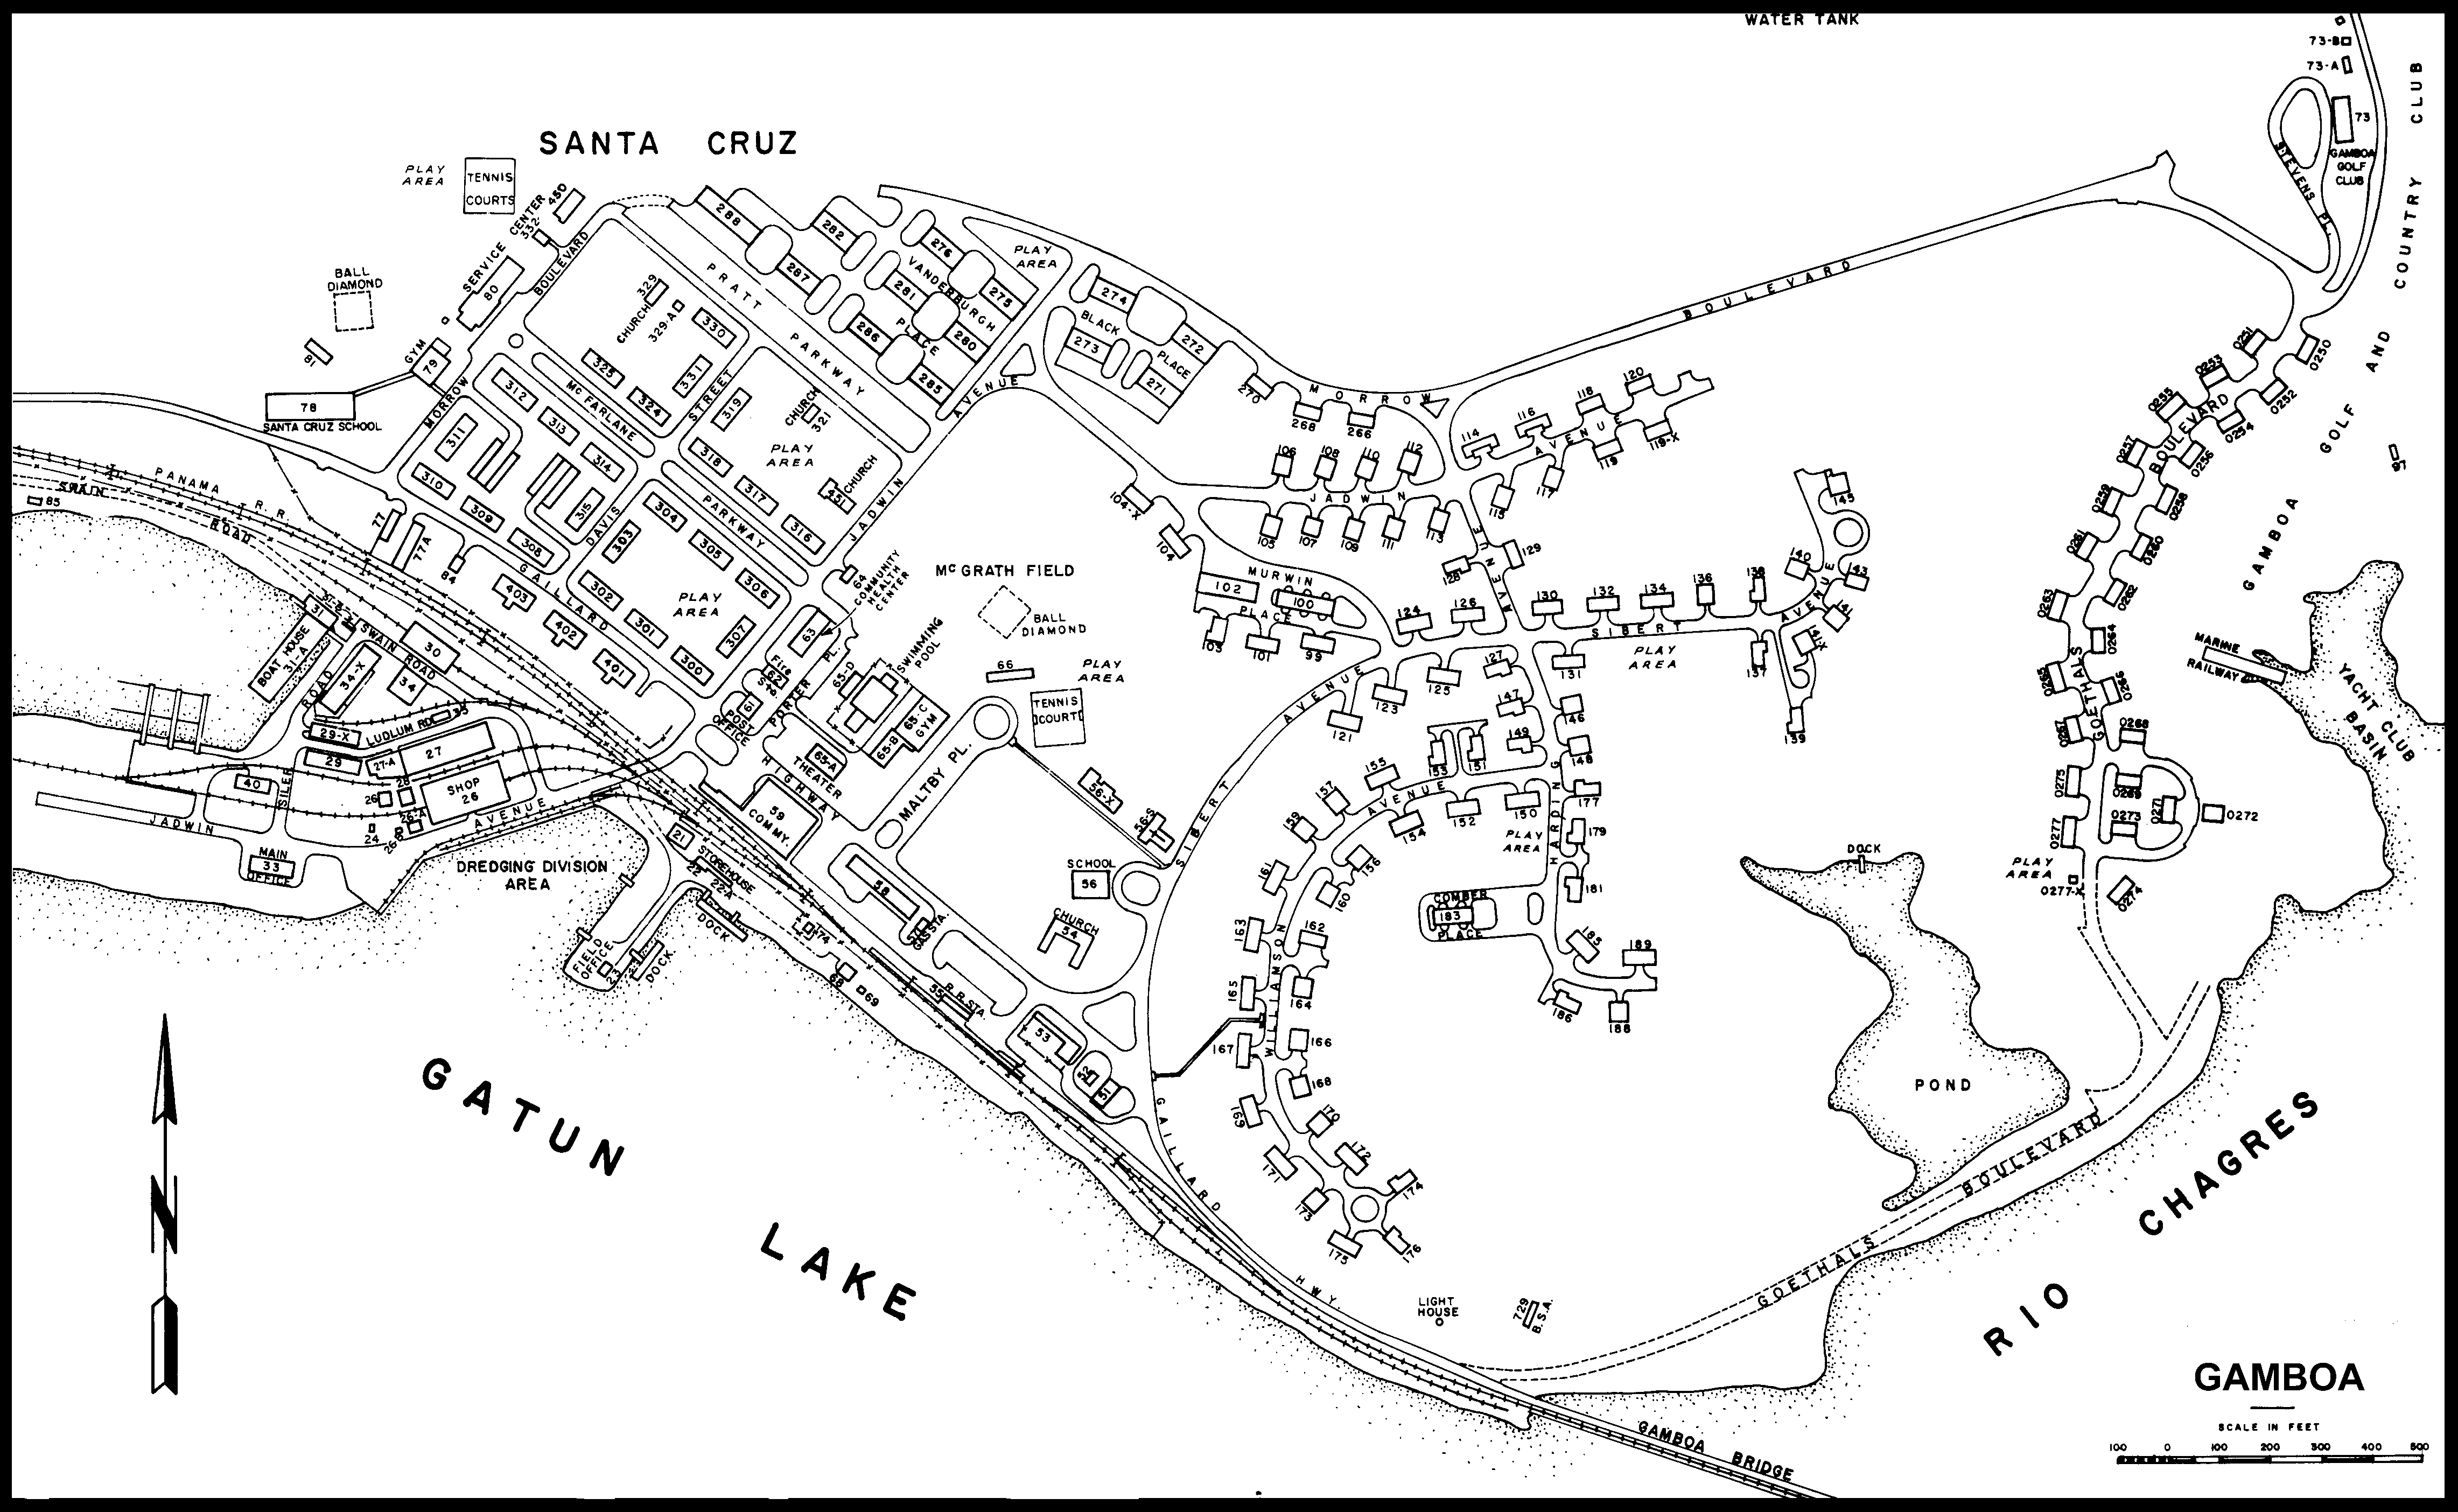 Mapa de Gamboa, Panamá